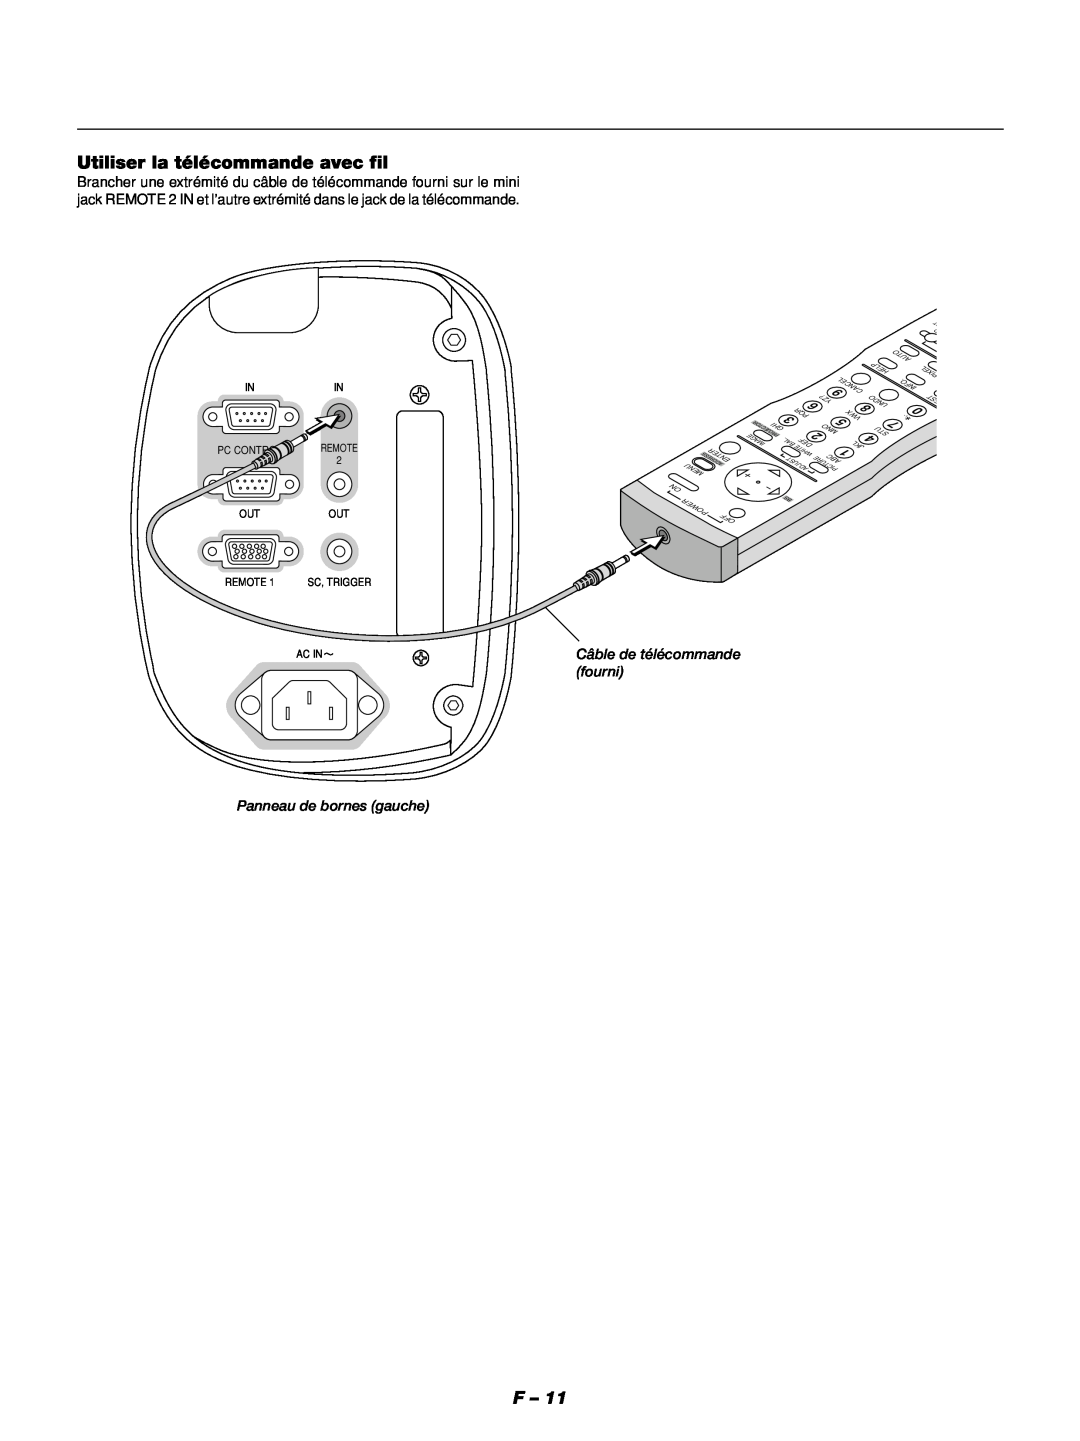 NEC GT1150 manuel dutilisation Utiliser la télécommande avec fil, Panneau de bornes gauche, Câble de télécommande fourni 